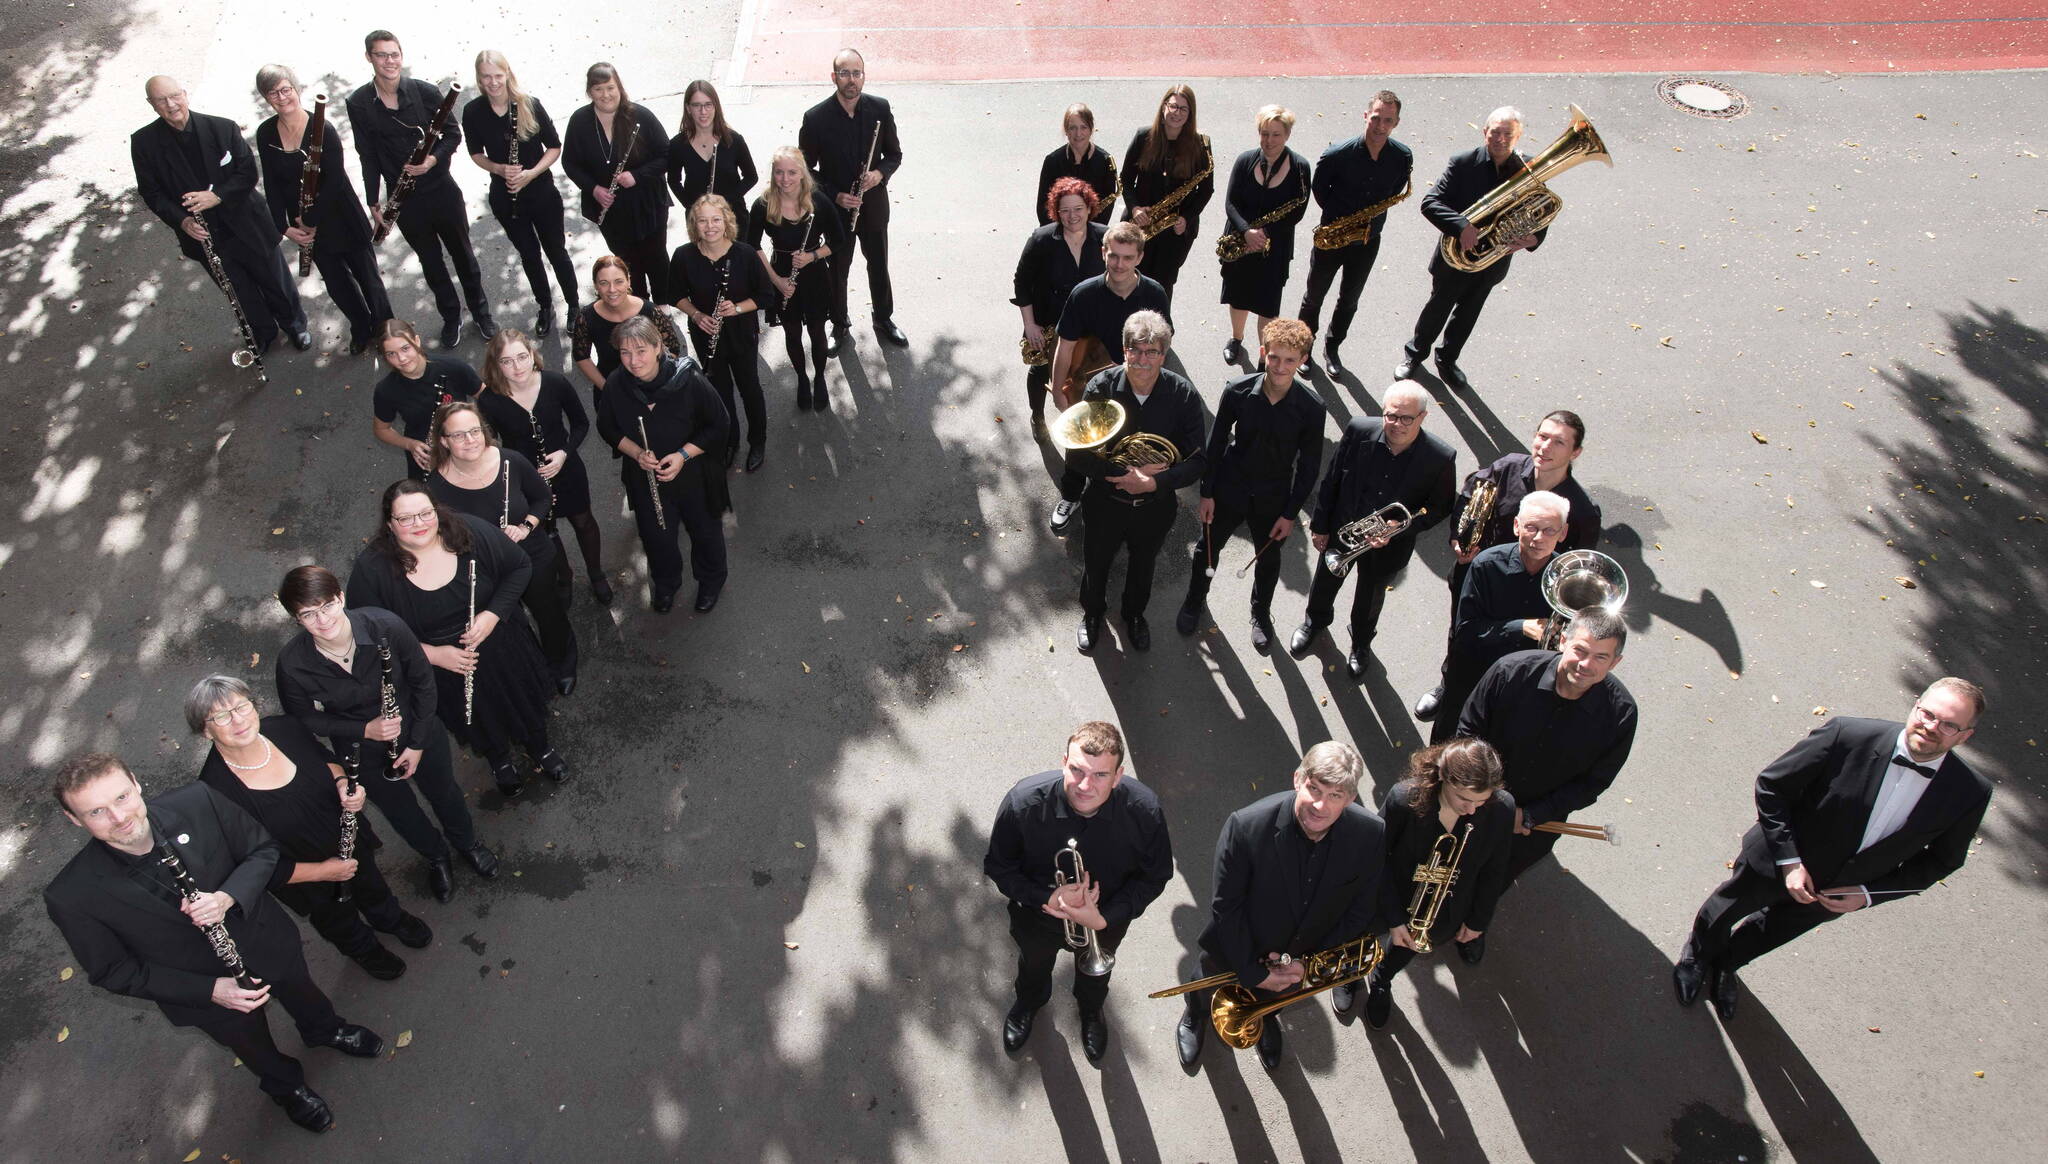 Mitglieder des 3 Sparren Orchesters formen in schwarzer Konzert-Kleidung eine "75.". Fotografiert aus der Vogelperspektive